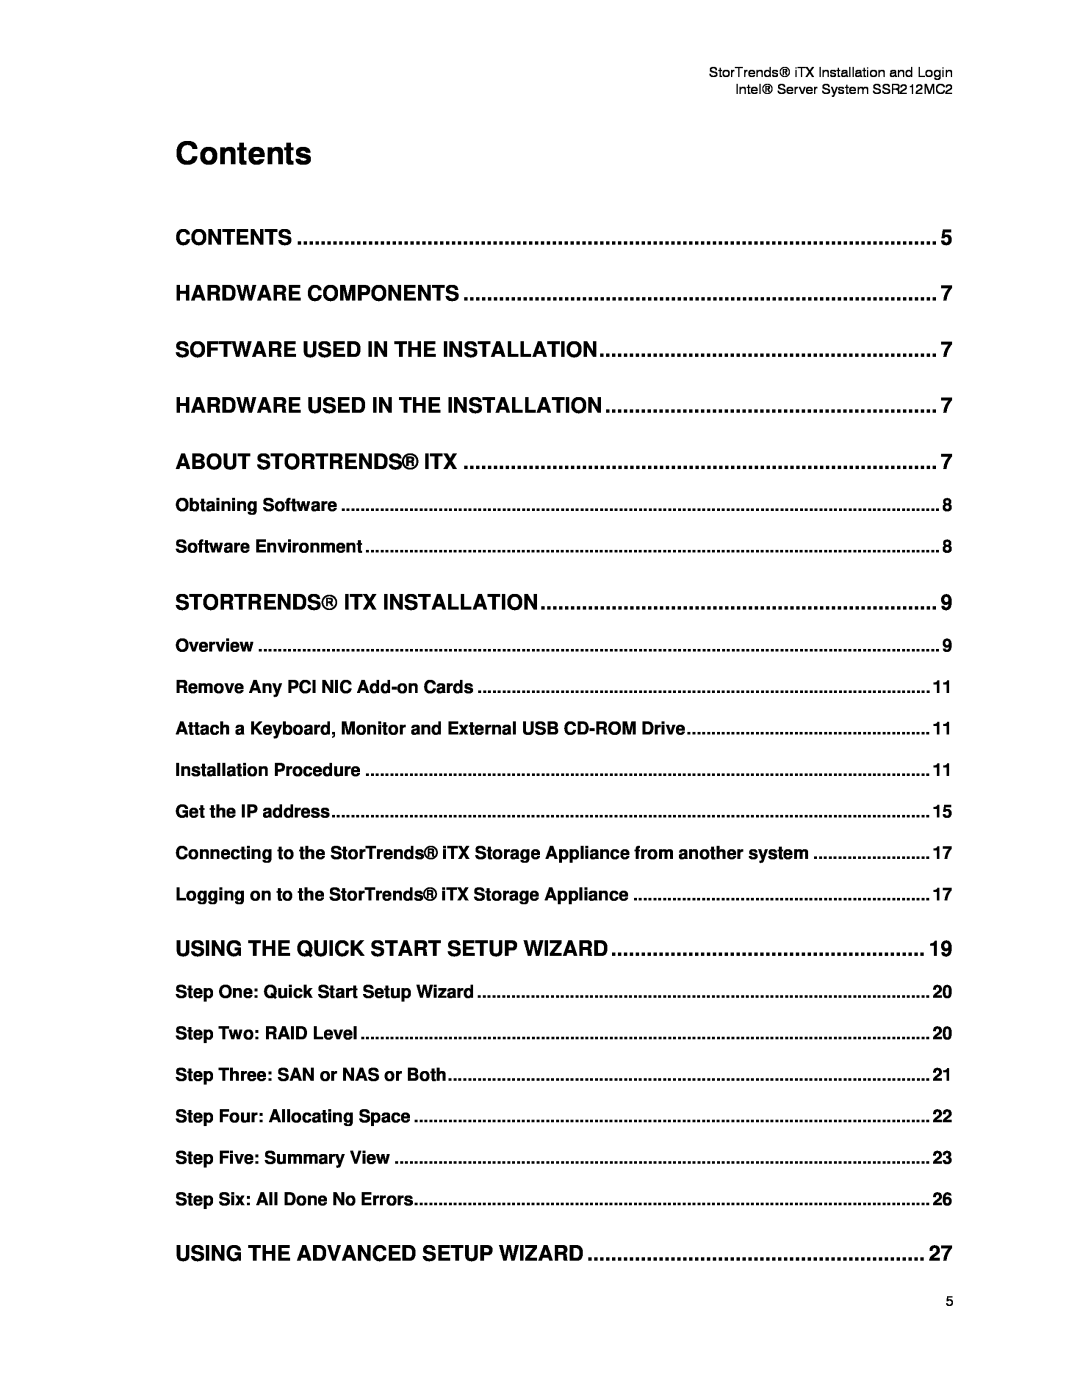 Intel SSR212MC2 manual Contents 